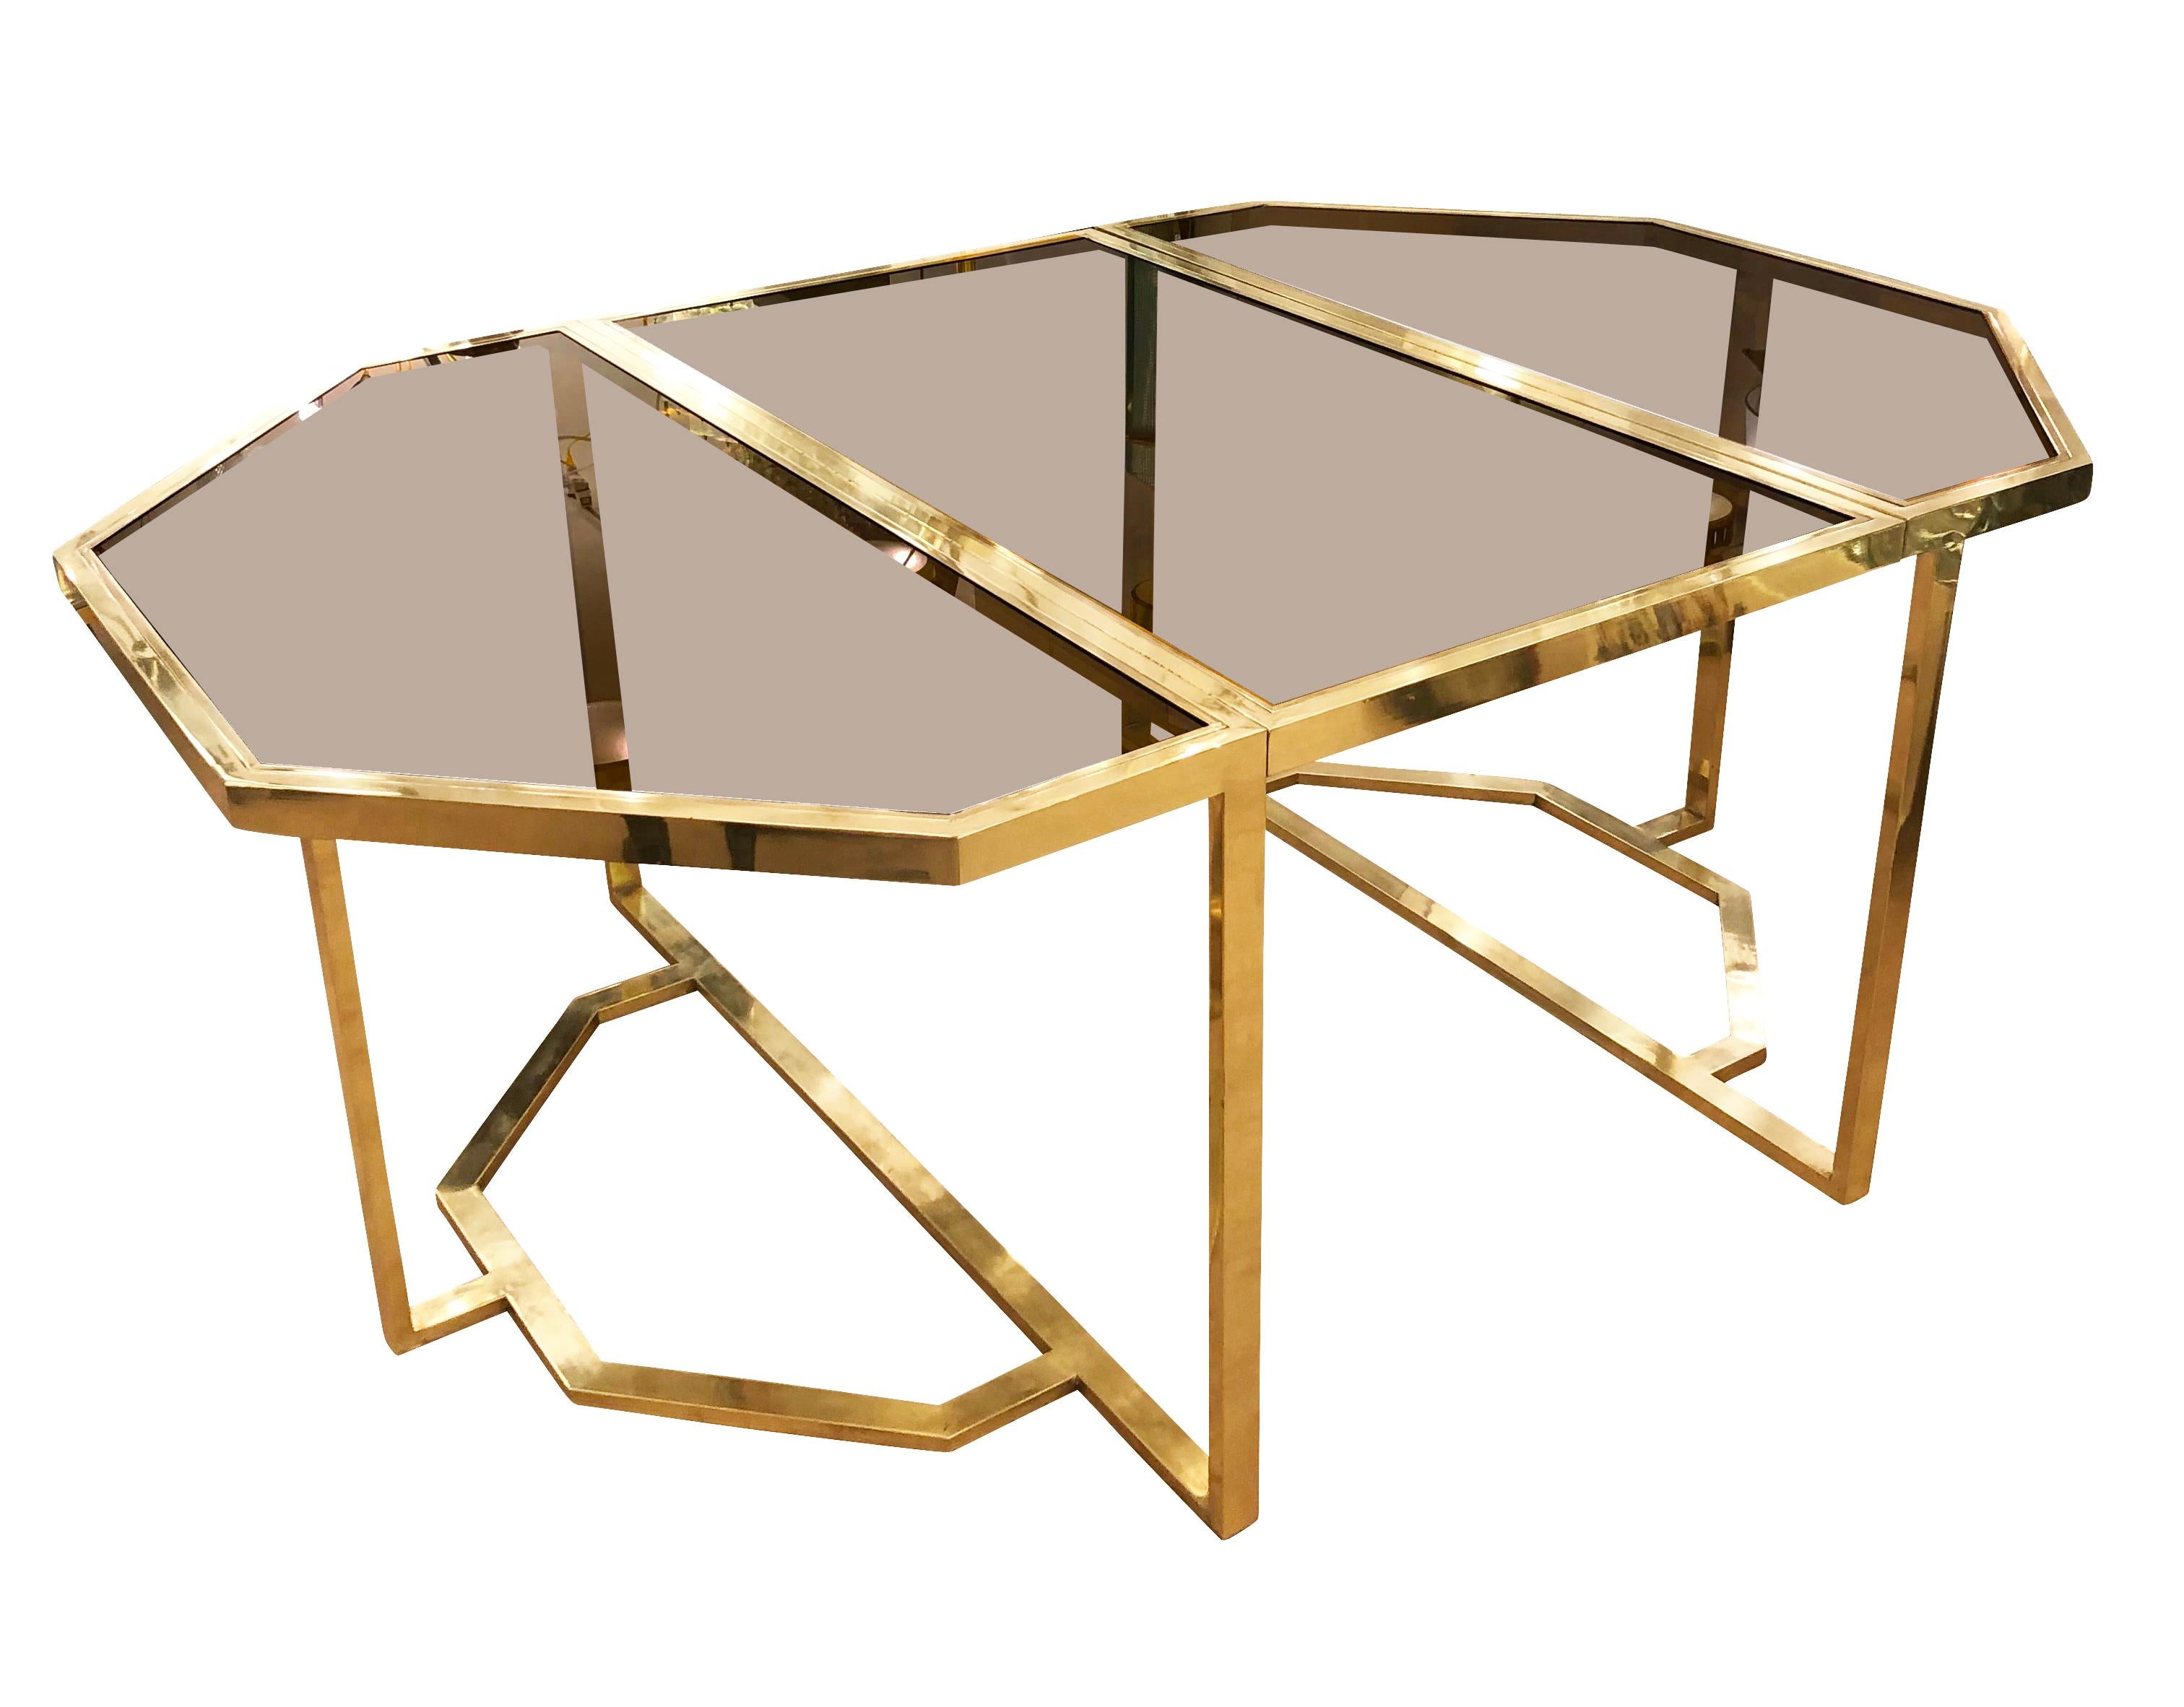 Table de salle à manger octogonale de Romeo Rega avec encadrement en laiton et plateaux en verre fumé. Au centre, il y a une feuille pliante qui permet d'allonger la pièce de 28